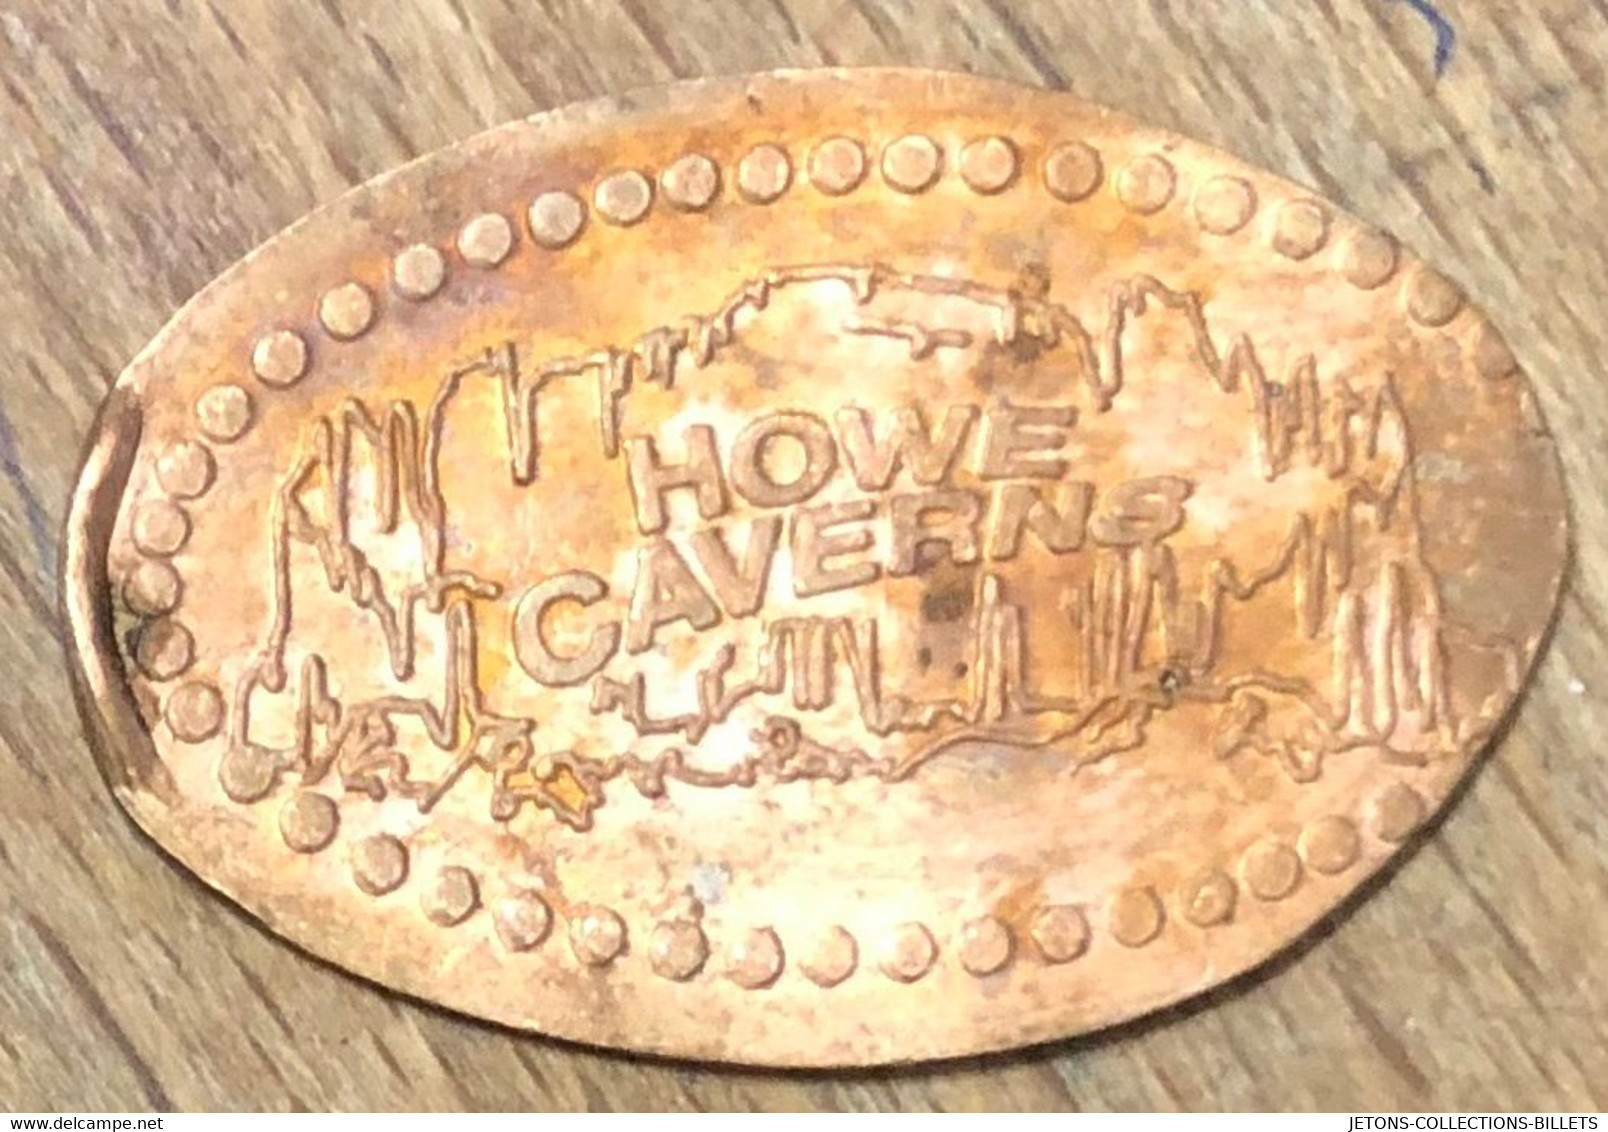 ÉTATS-UNIS USA HOWE CAVERNS PIÈCE ÉCRASÉE PENNY ELONGATED COIN MEDAILLE TOURISTIQUE MEDALS TOKENS - Souvenir-Medaille (elongated Coins)